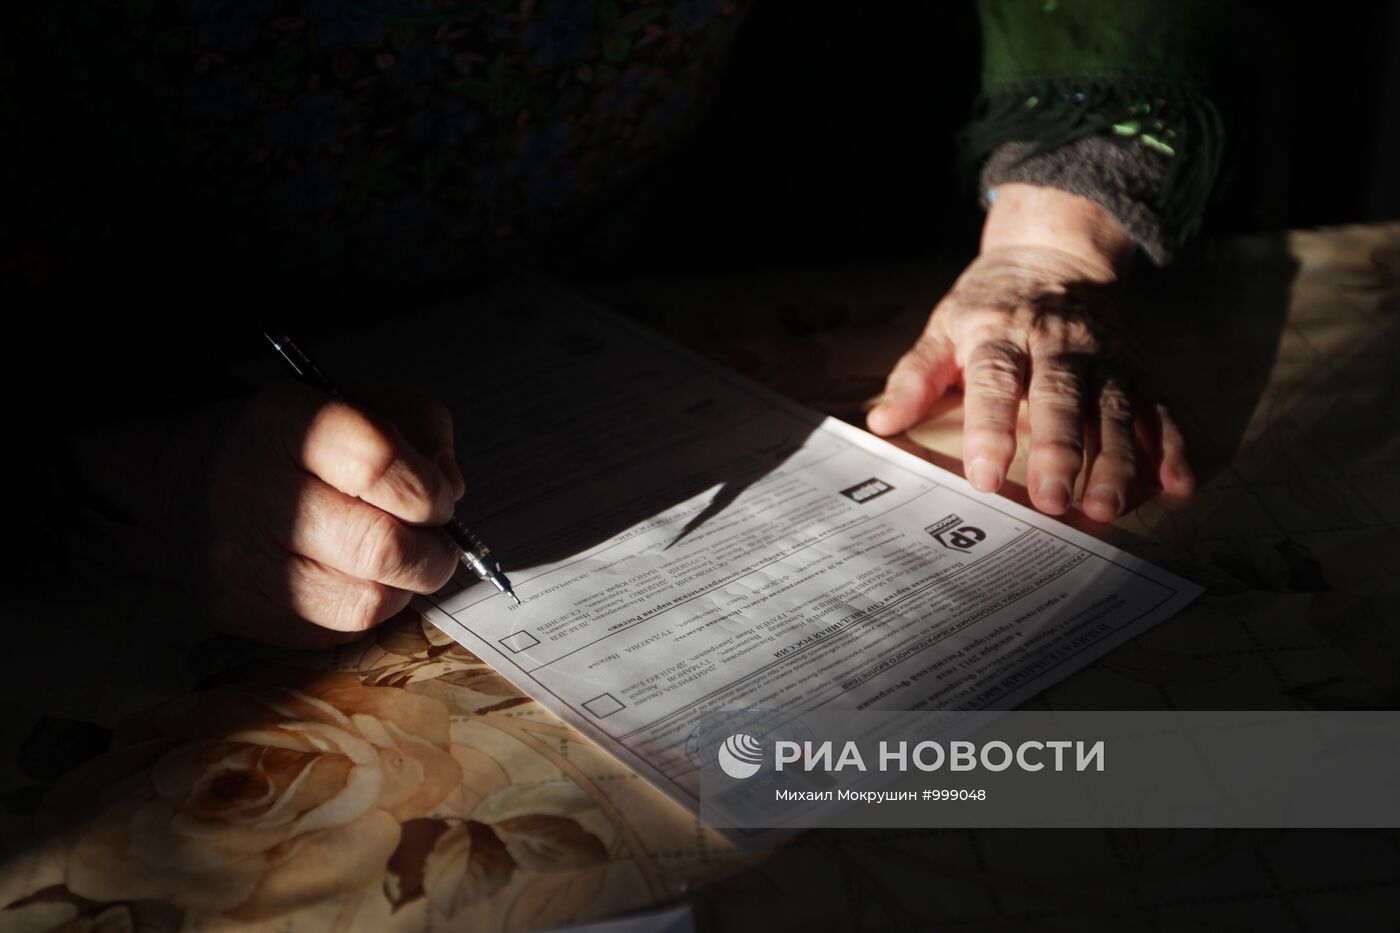 Выборы депутатов Государственной думы РФ в Южной Осетии